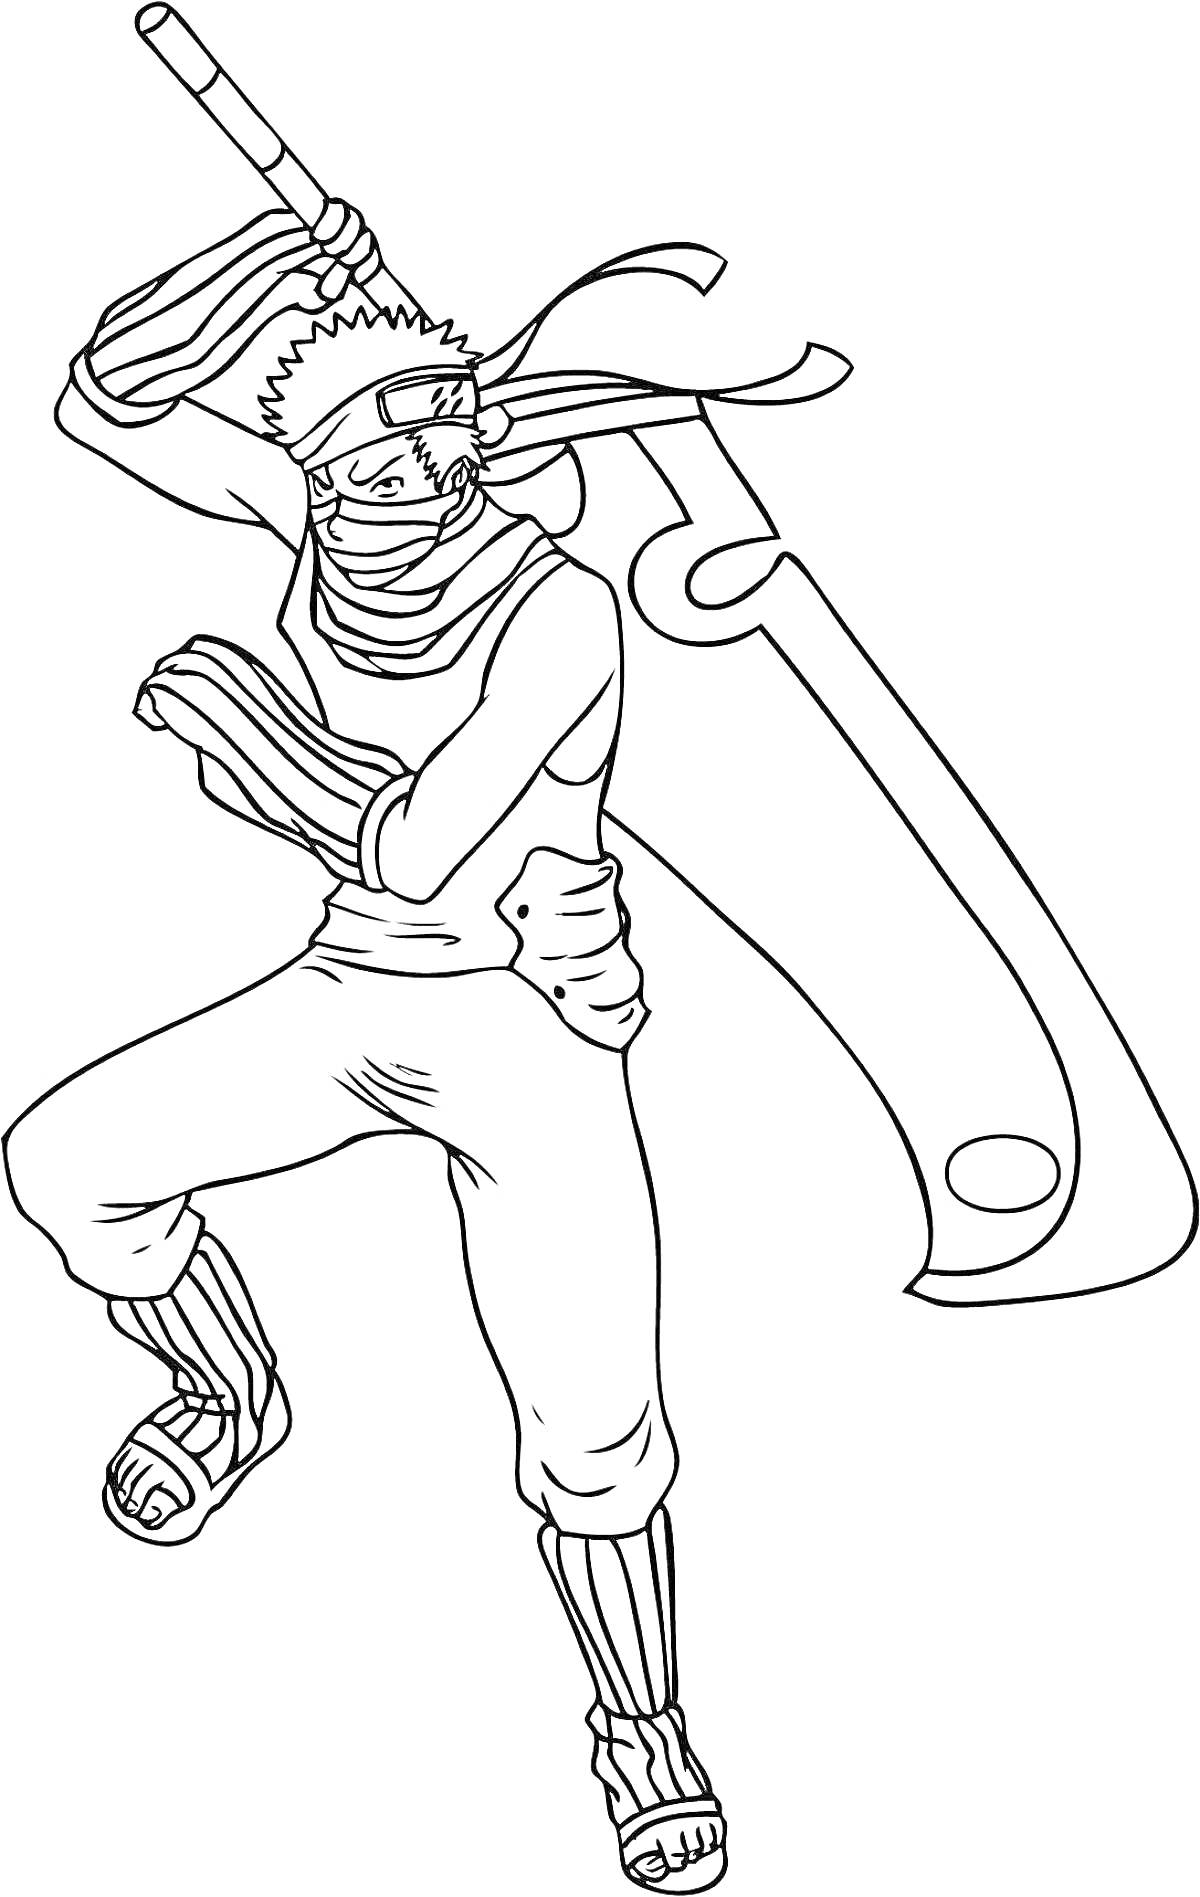 Раскраска Наруто персонаж с большим мечом на плече, повязкой на голове, повязкой на лице и открытыми сандалиями